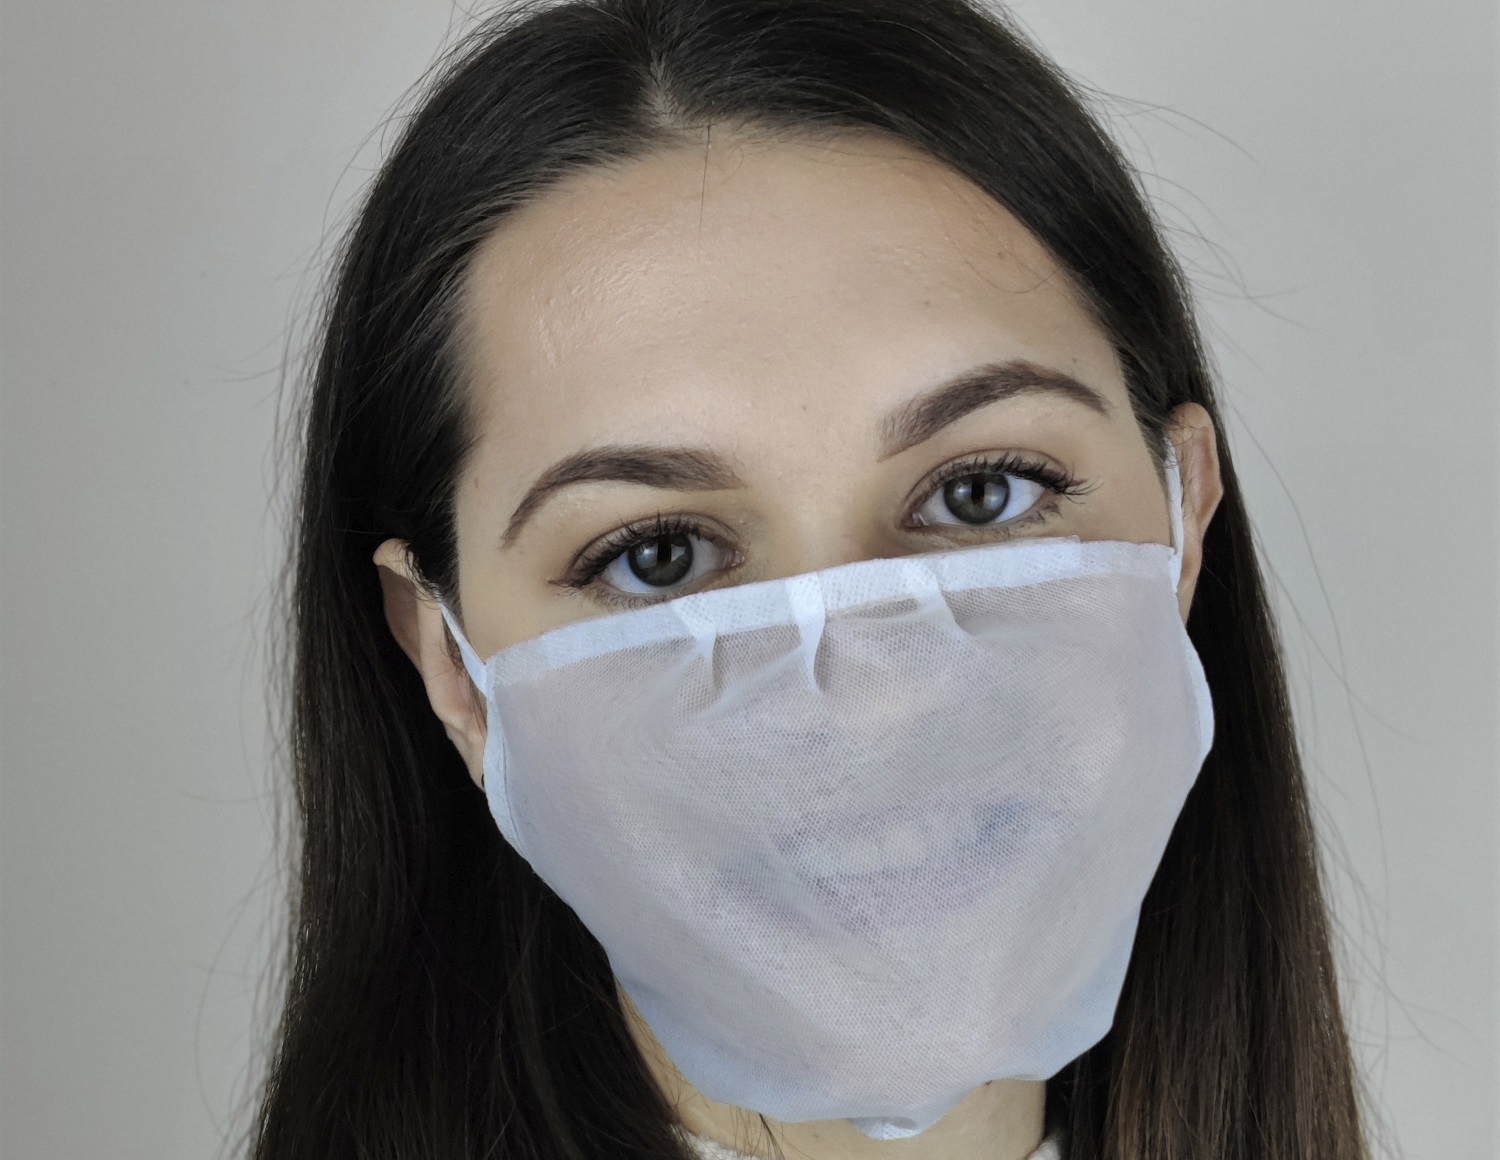 KTU studentų sėkmė JAV Silicio slėnio konkurse – sukurta permatoma apsauginė veido kaukė